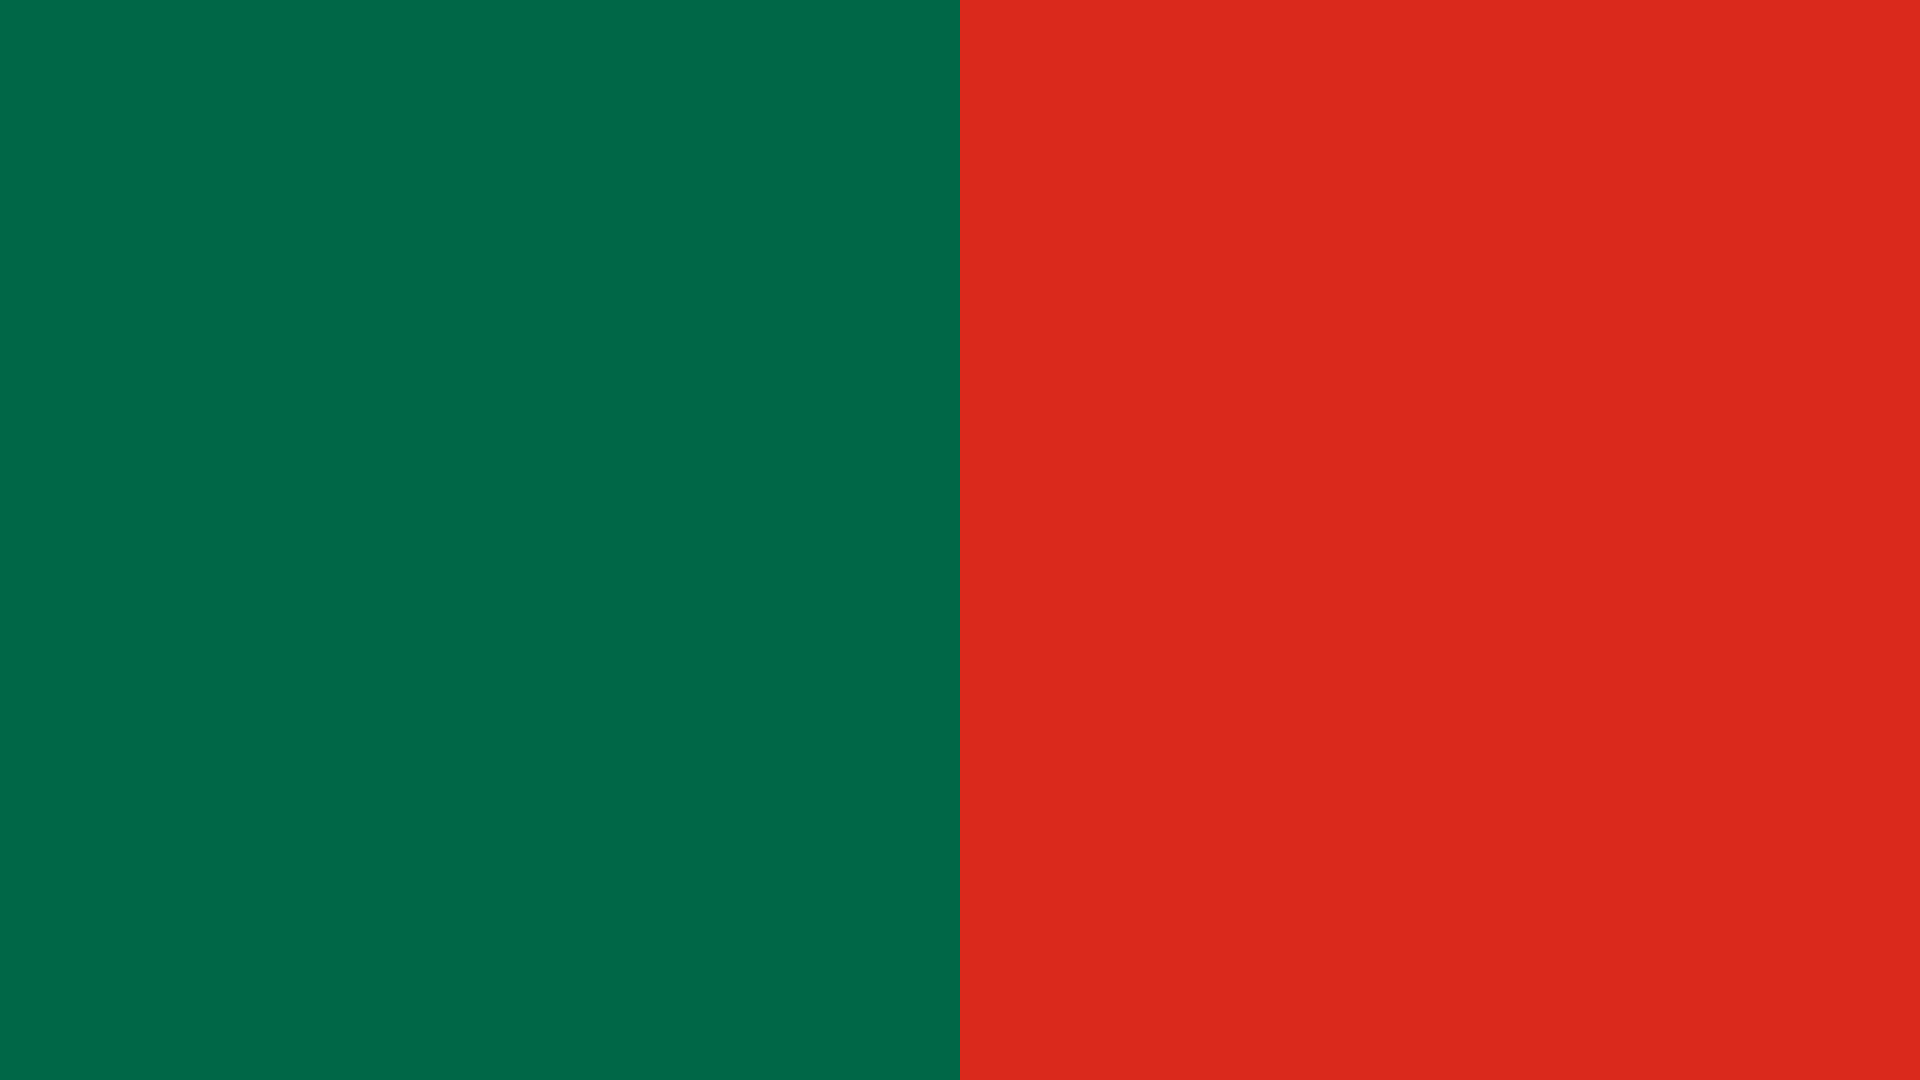 Bangladesh Flag Colors Country Flags SchemeColor.com